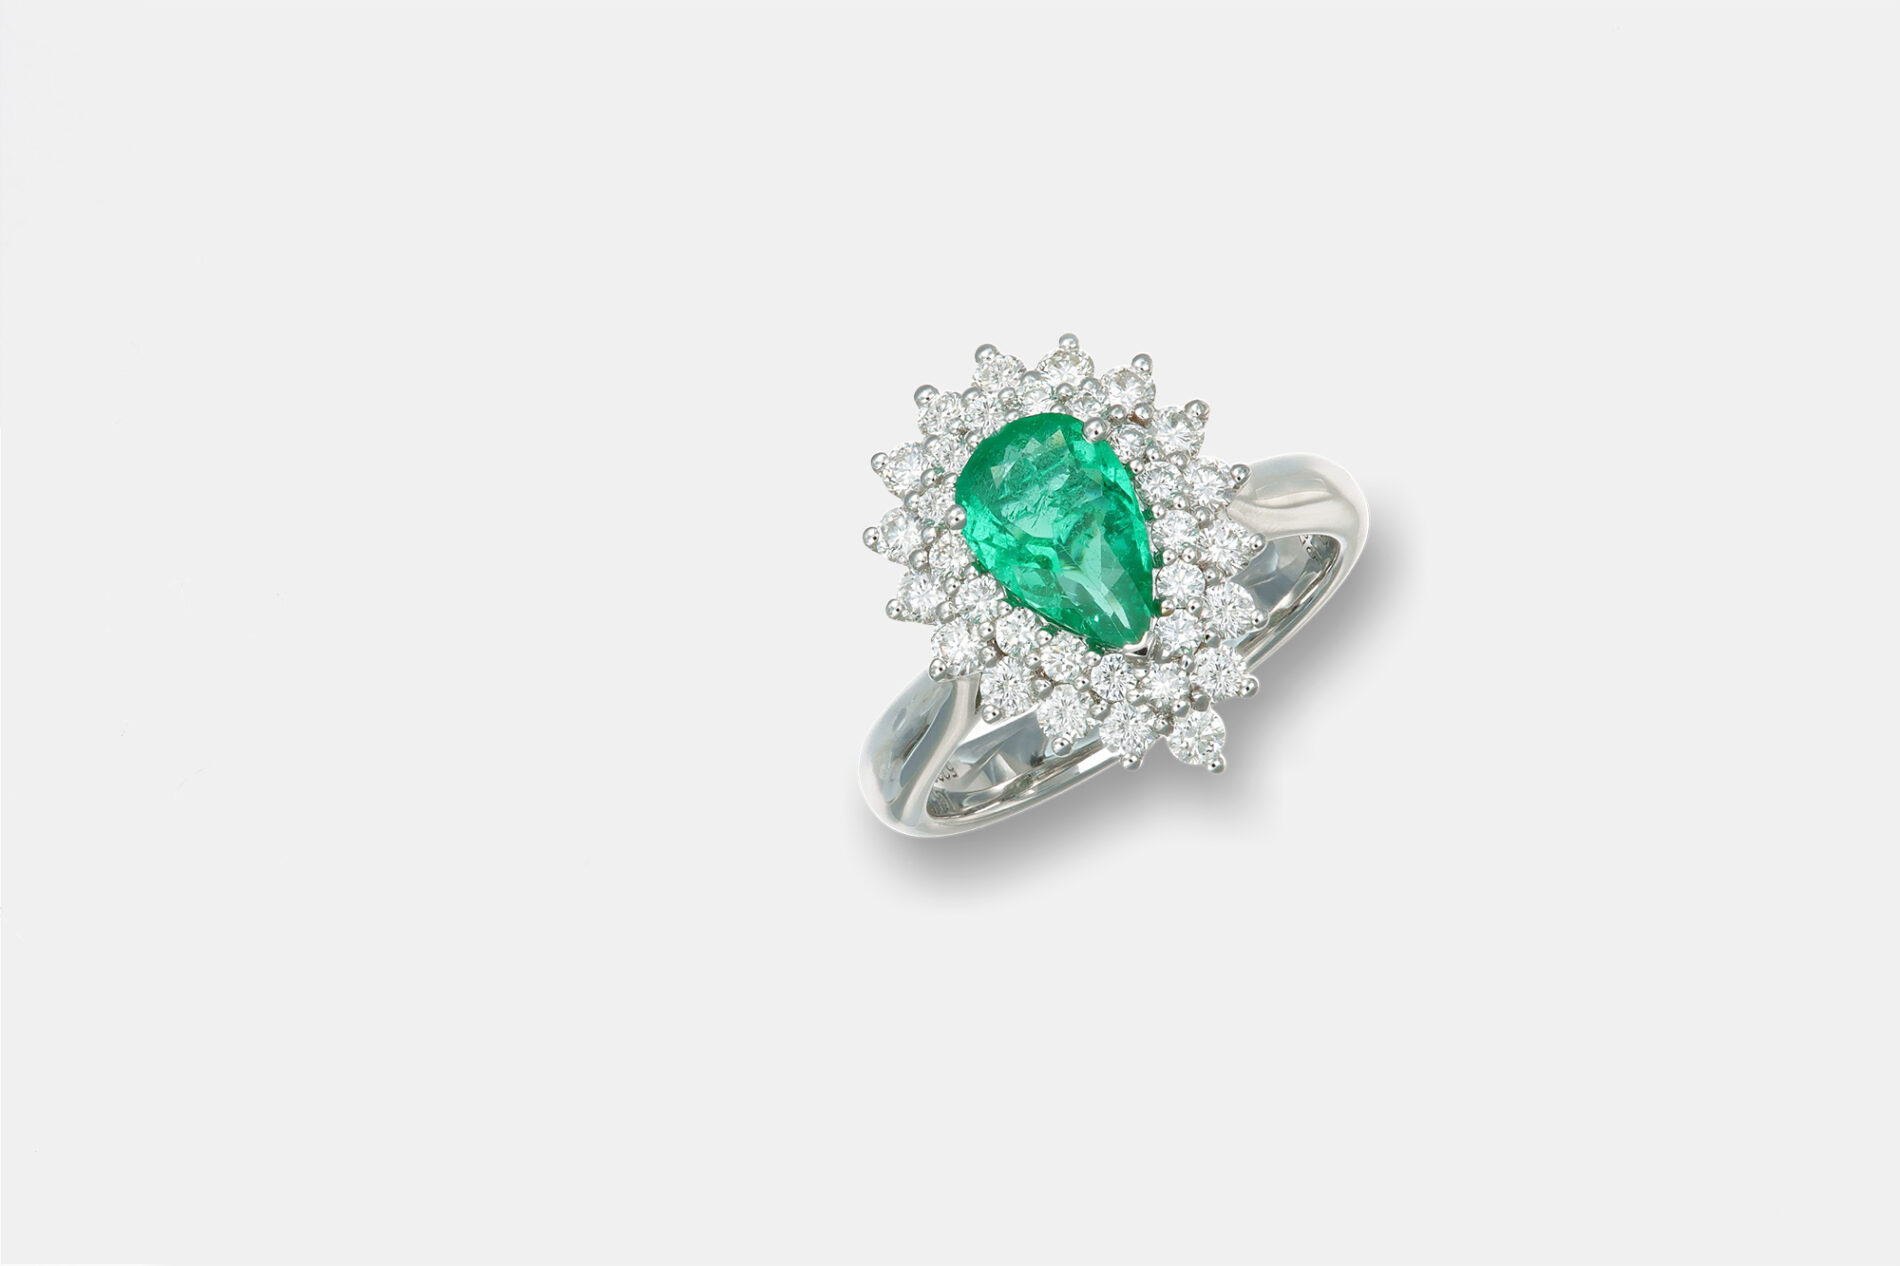 Anello smeraldo goccia con diamanti Prestige - Gioielleria Casavola di Noci - idee regalo anniversario matrimonio importante- main